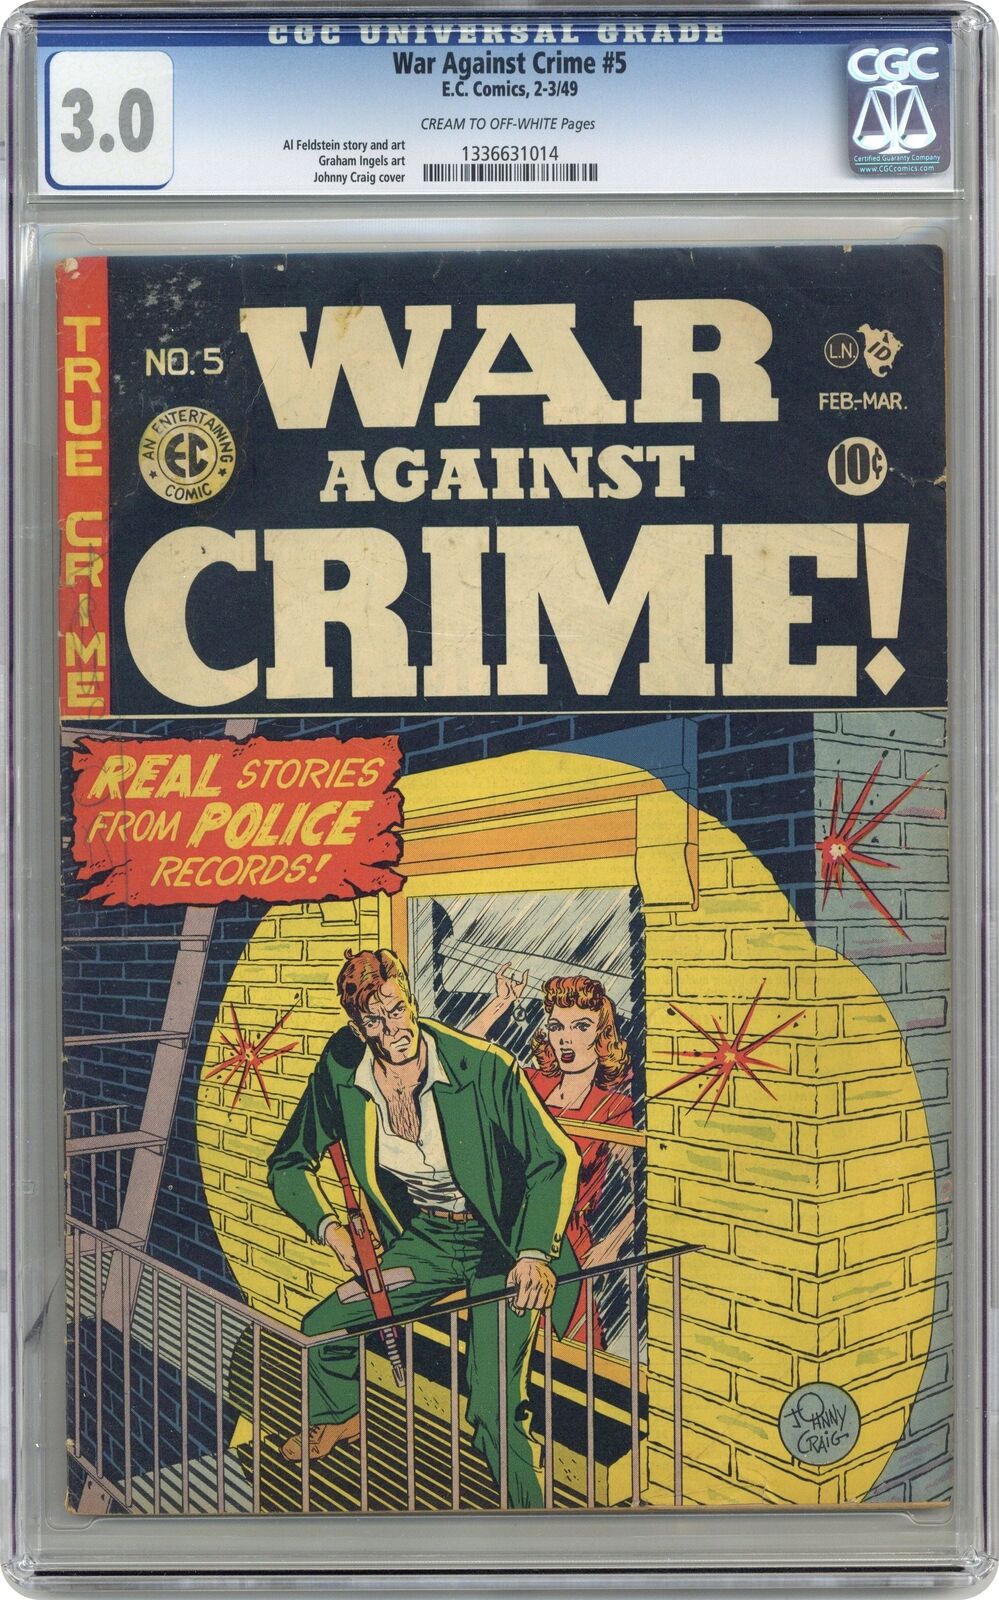 War Against Crime #5 CGC 3.0 1949 1336631014